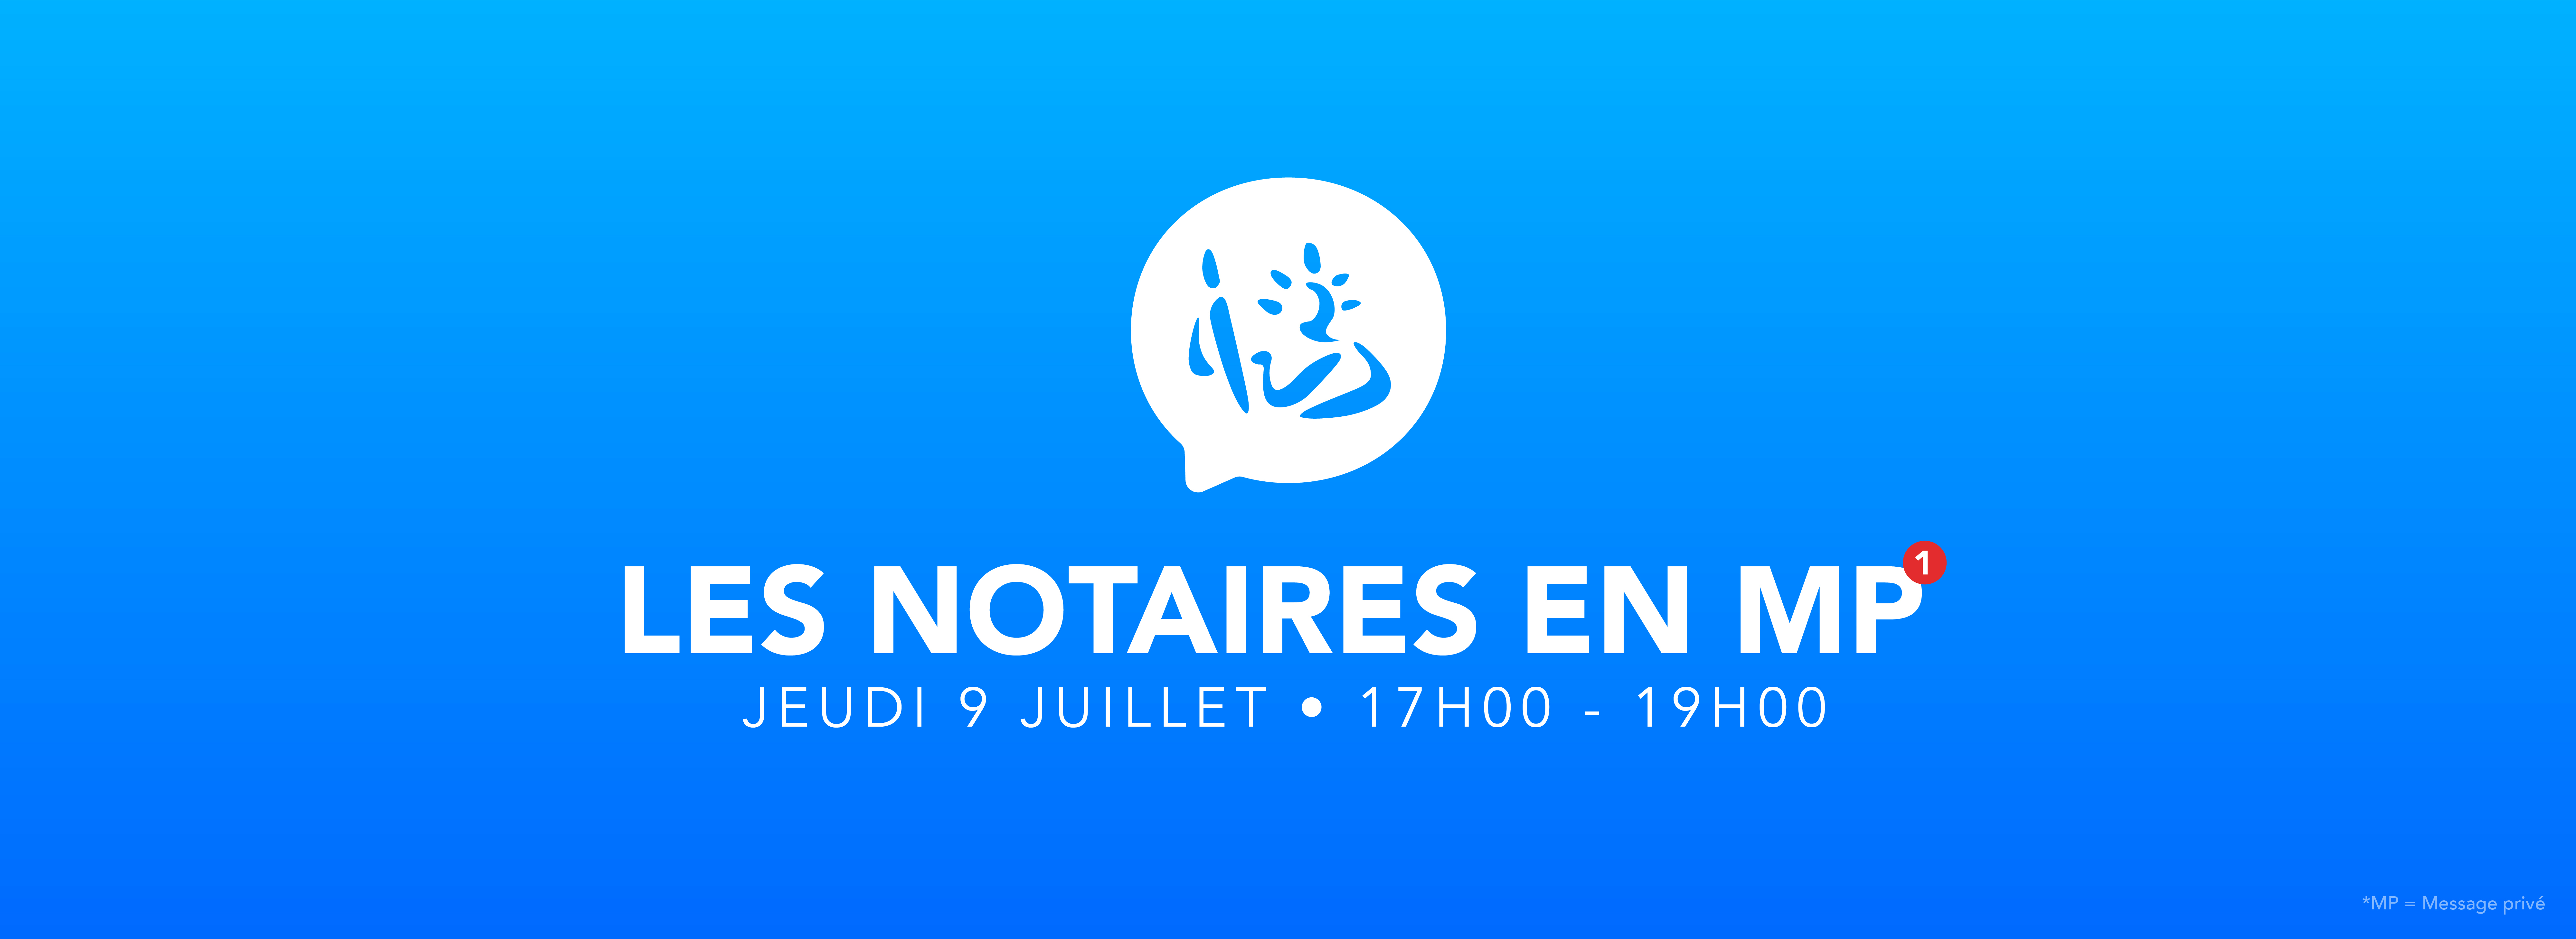 Les Prix De L'immobilier En Gironde | Chambre Gironde Notaires intérieur Chambre Des Notaires 44